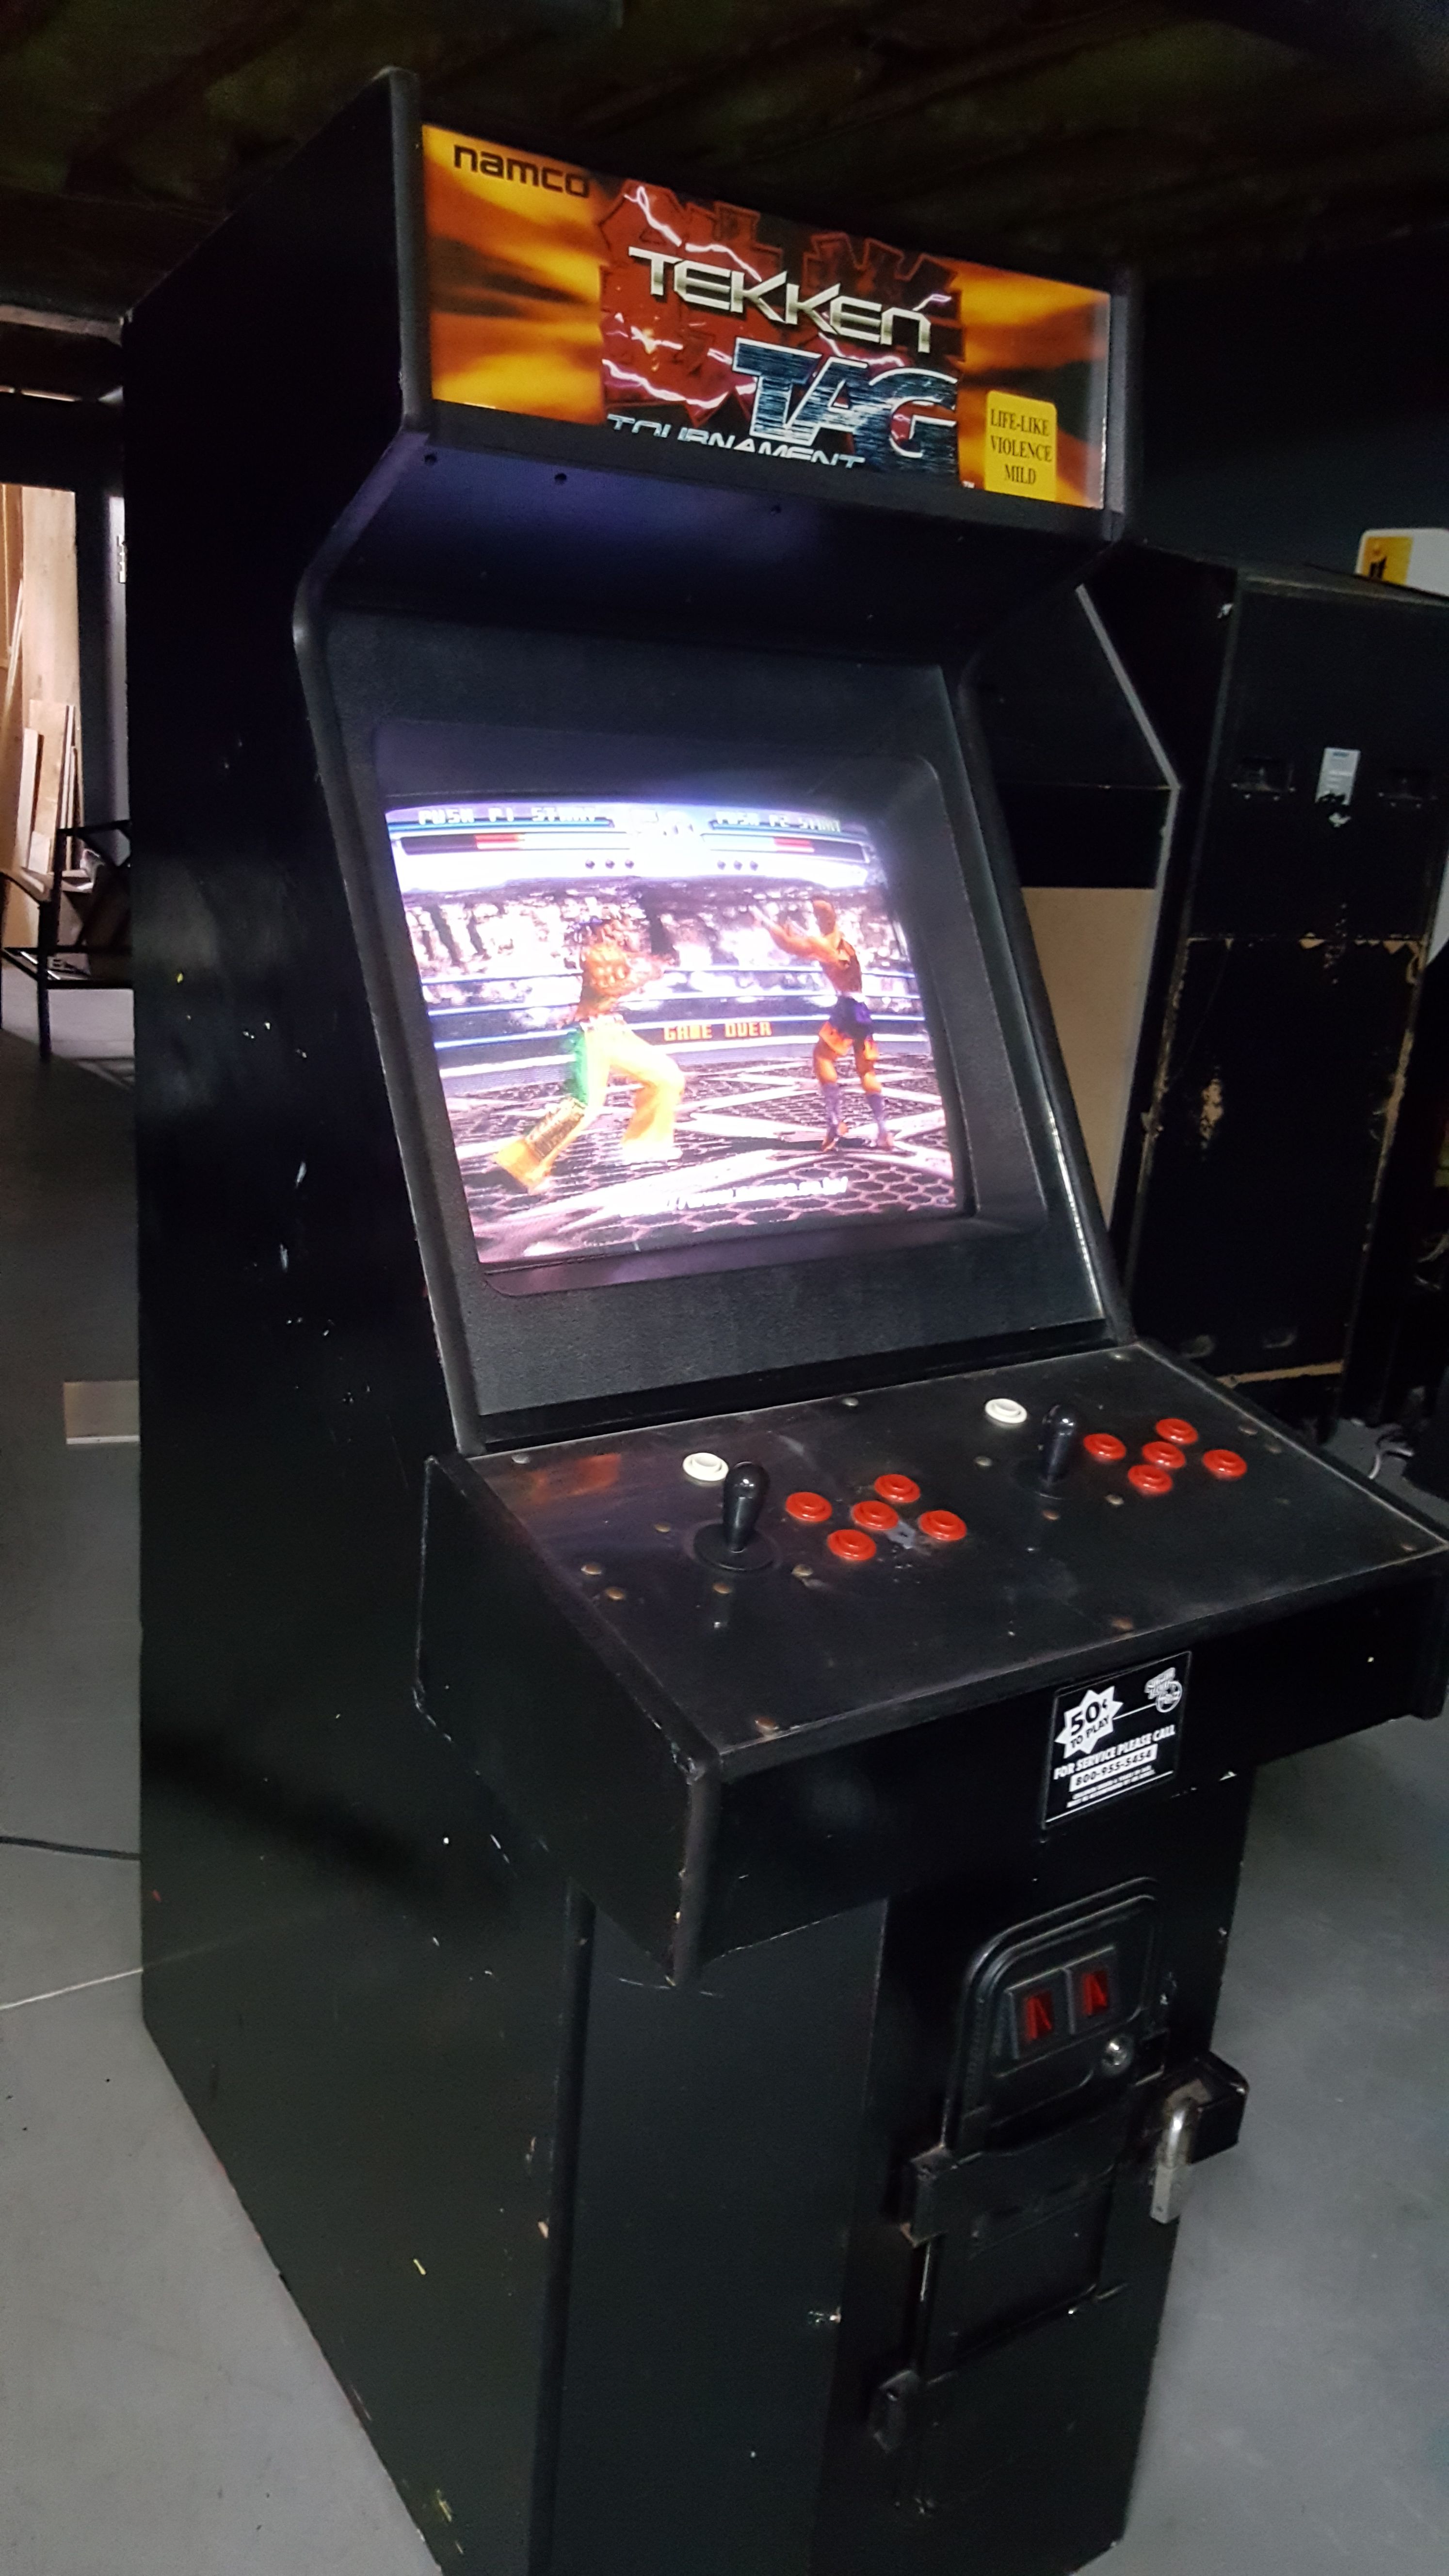 tekken tag arcade machine